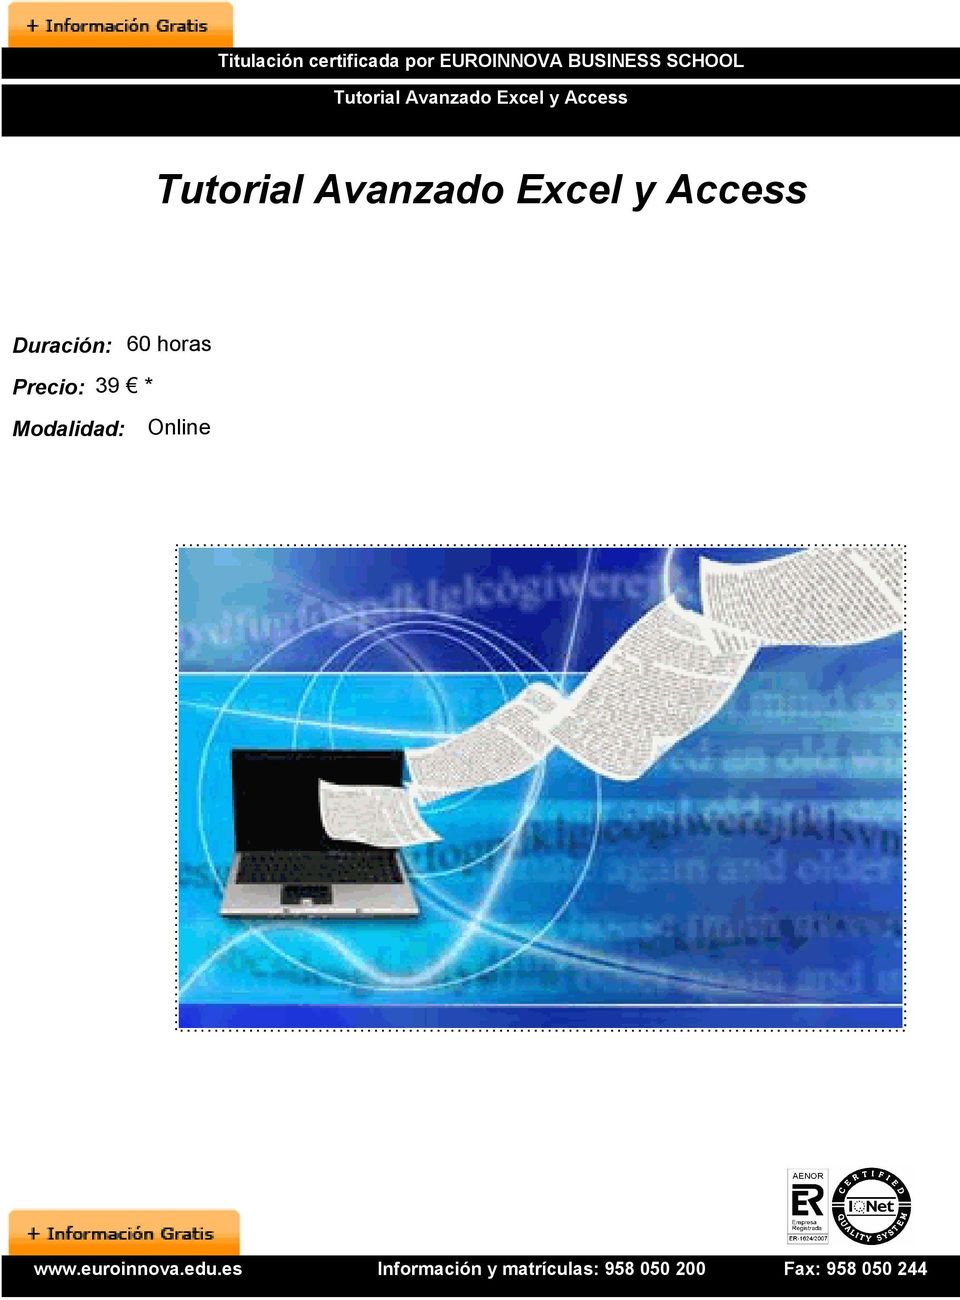 Access Tutorial Avanzado Excel y Access